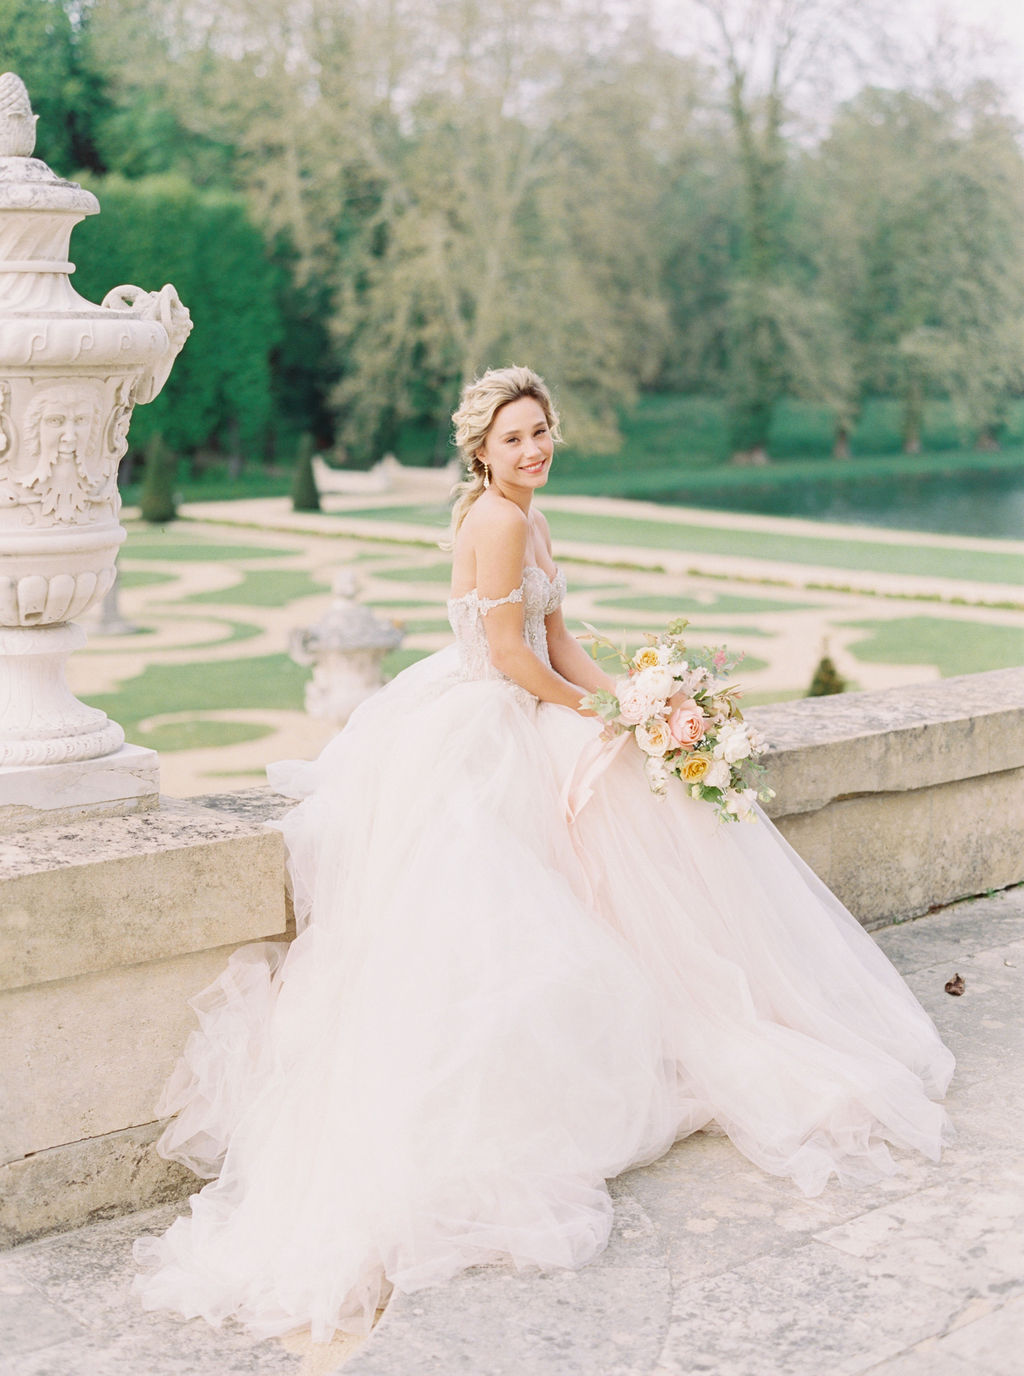 travellur_photoshoot_duchesse_de_villette_chateau_gardens_model_luxury_wedding.jpg